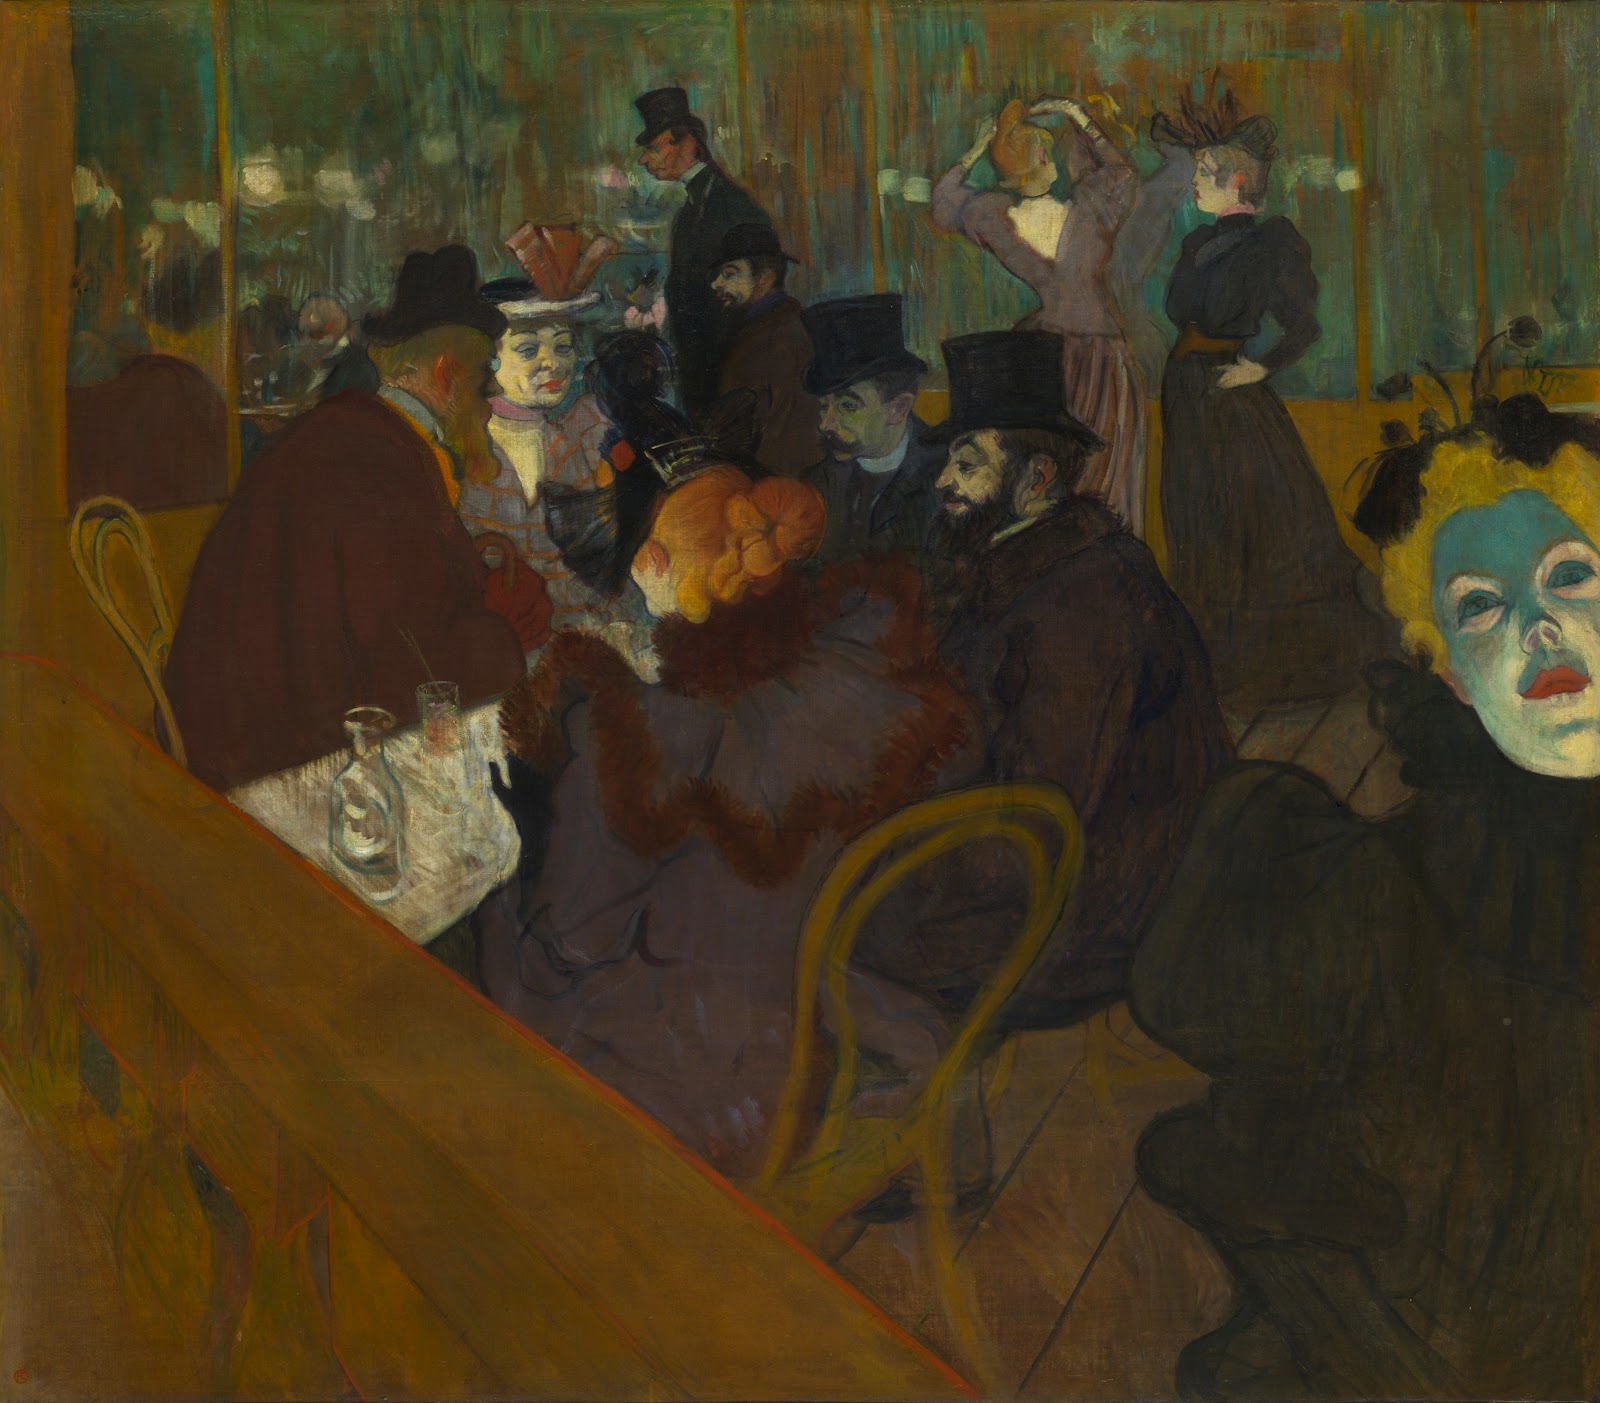 Henri+de+Toulouse+Lautrec-1864-1901 (139).jpg